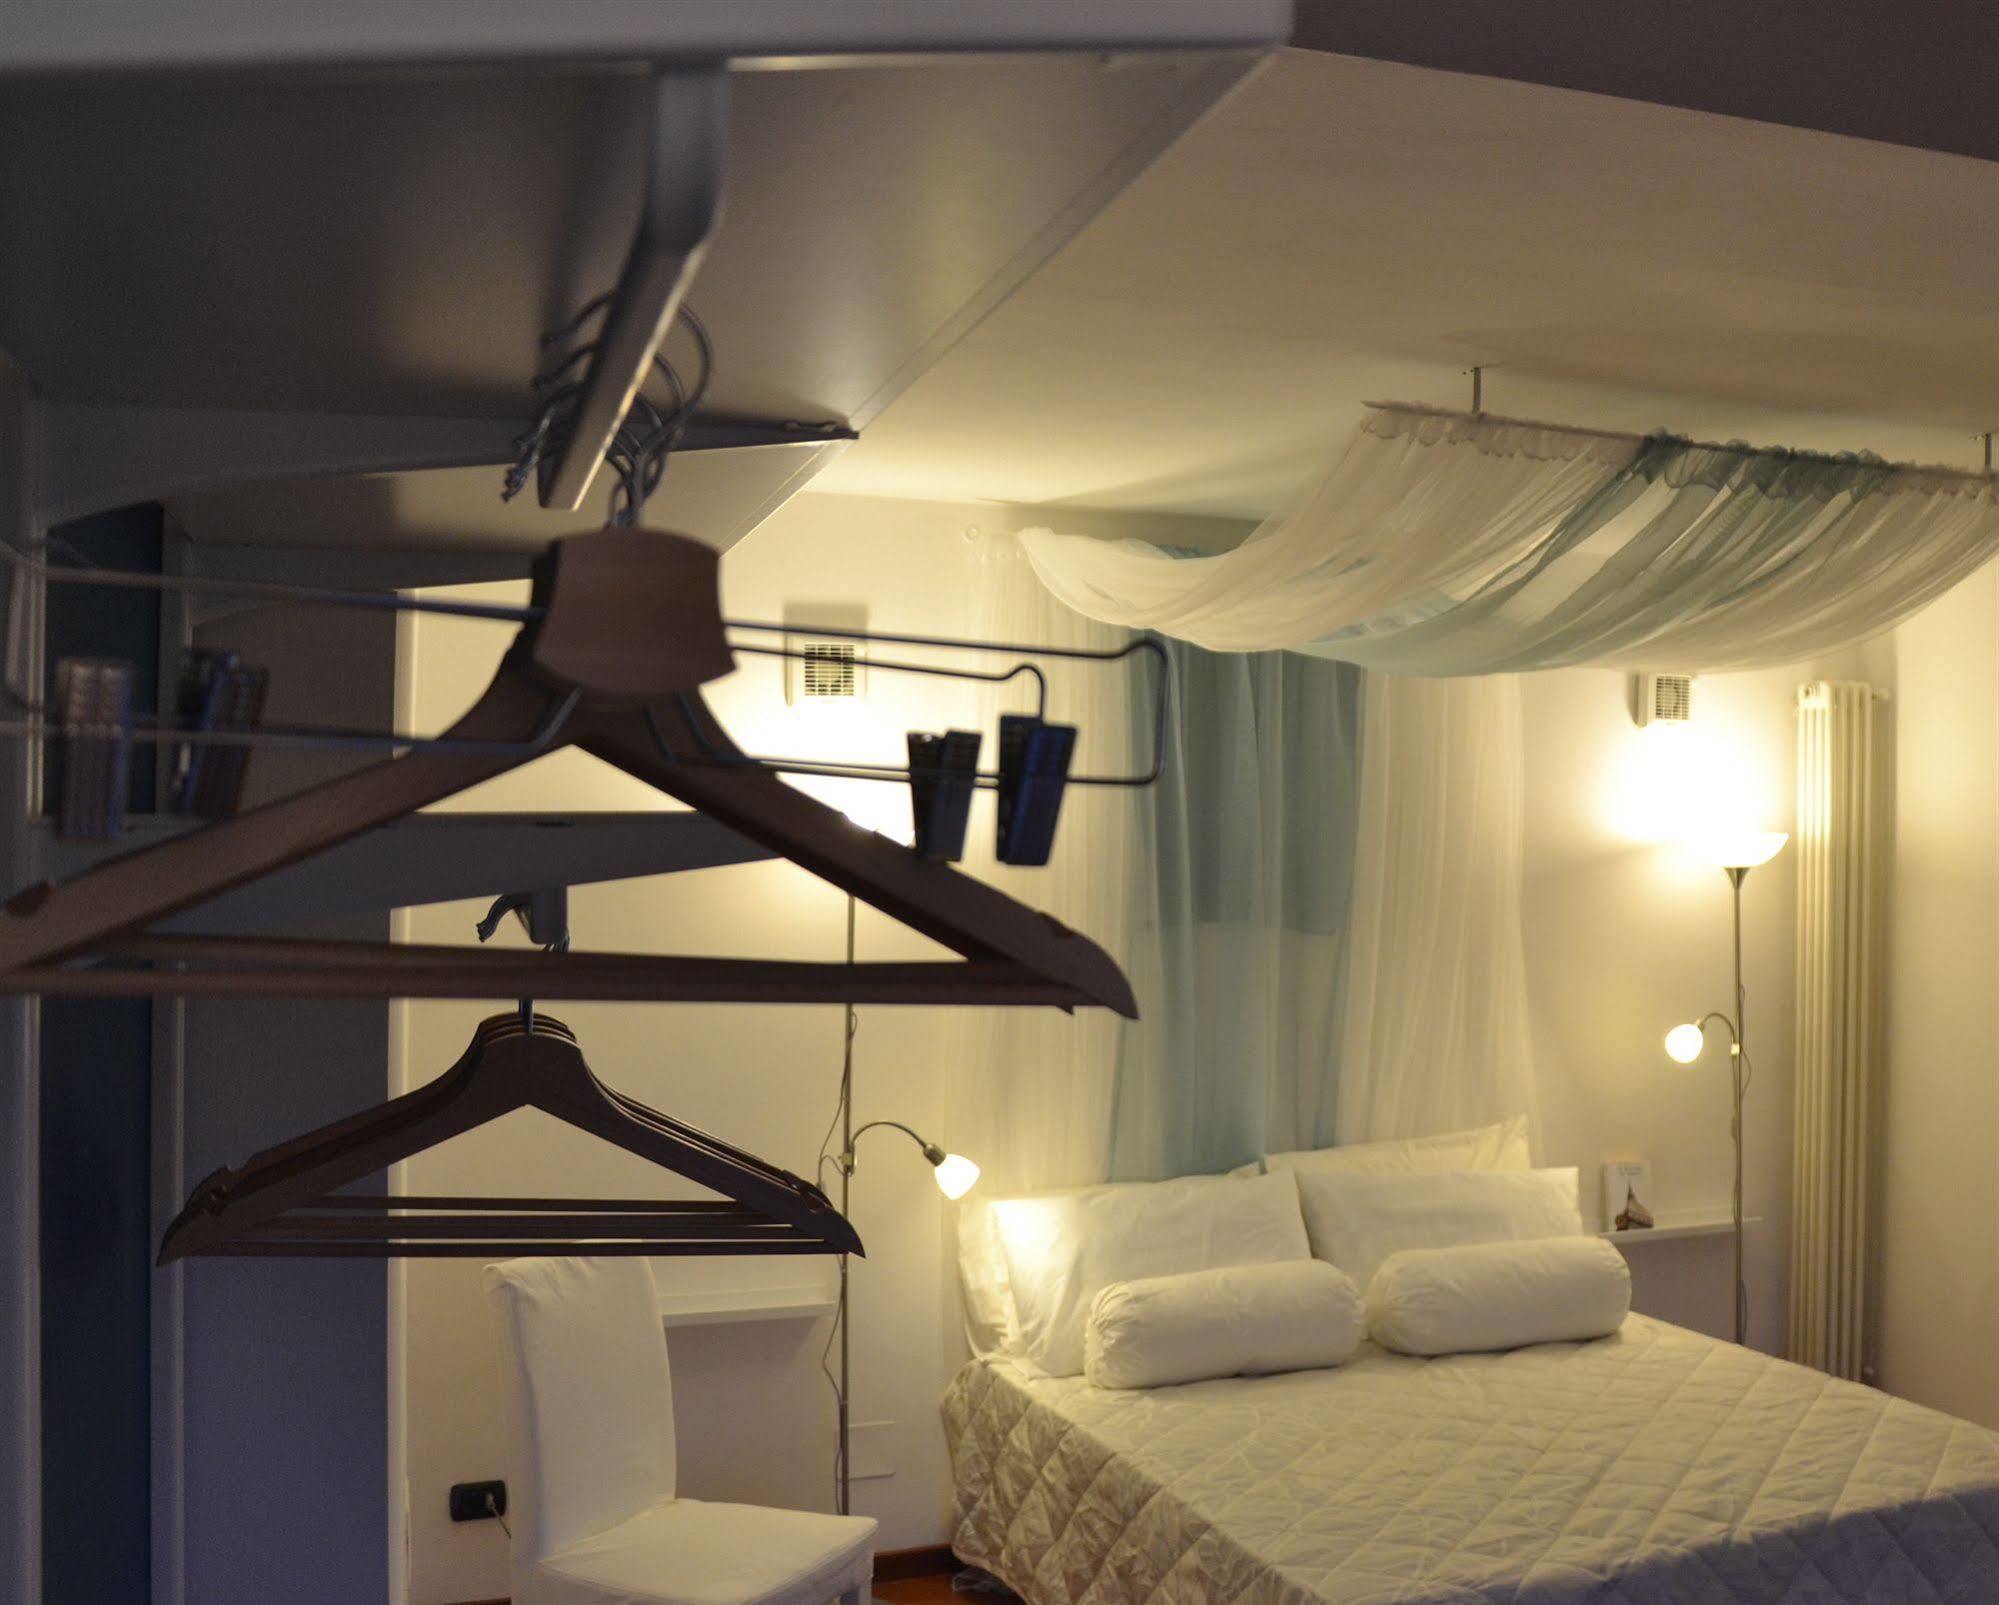 Garibaldi 18 - Rooms And Suite Турин Экстерьер фото